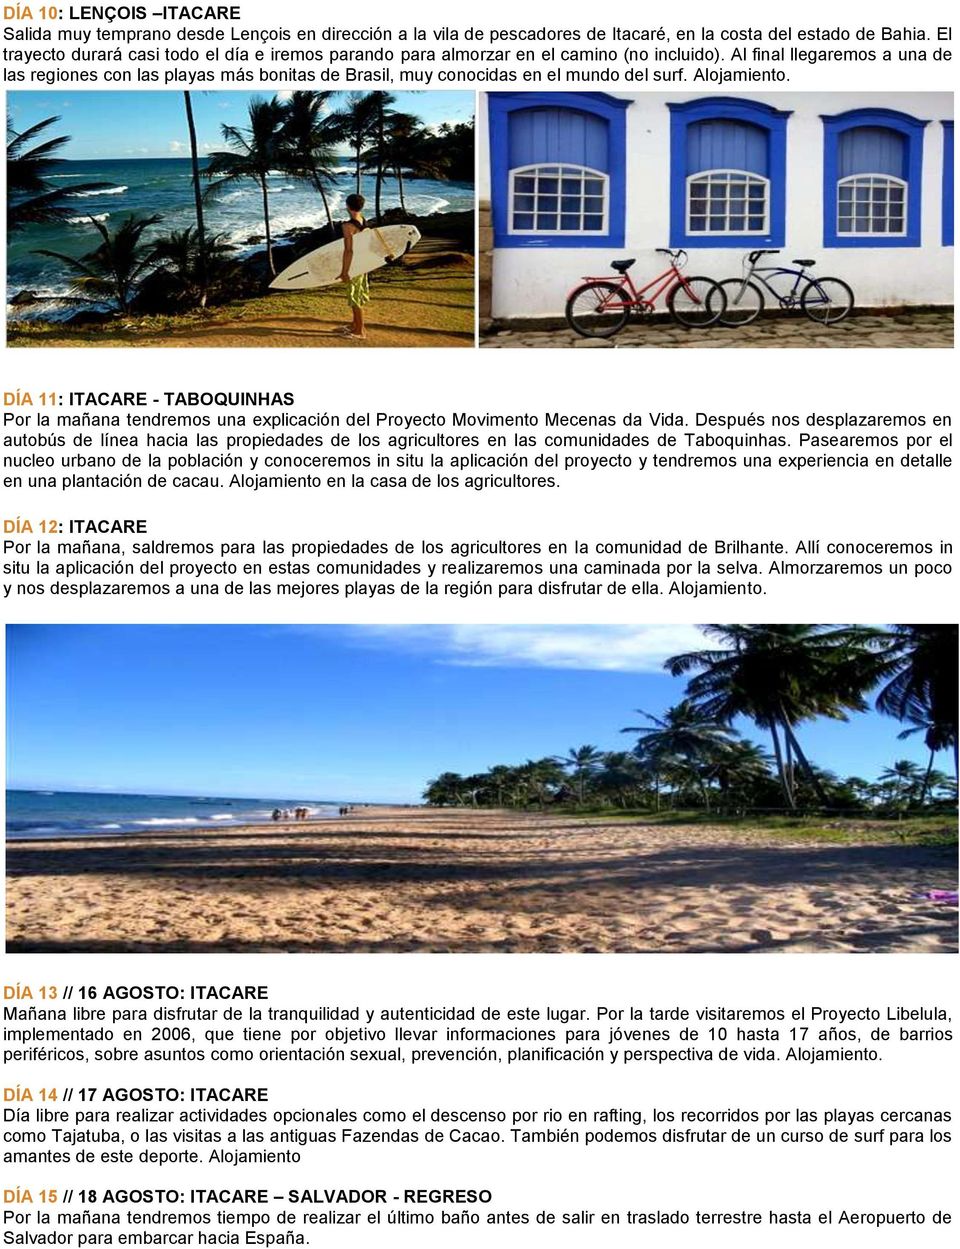 Al final llegaremos a una de las regiones con las playas más bonitas de Brasil, muy conocidas en el mundo del surf. Alojamiento.